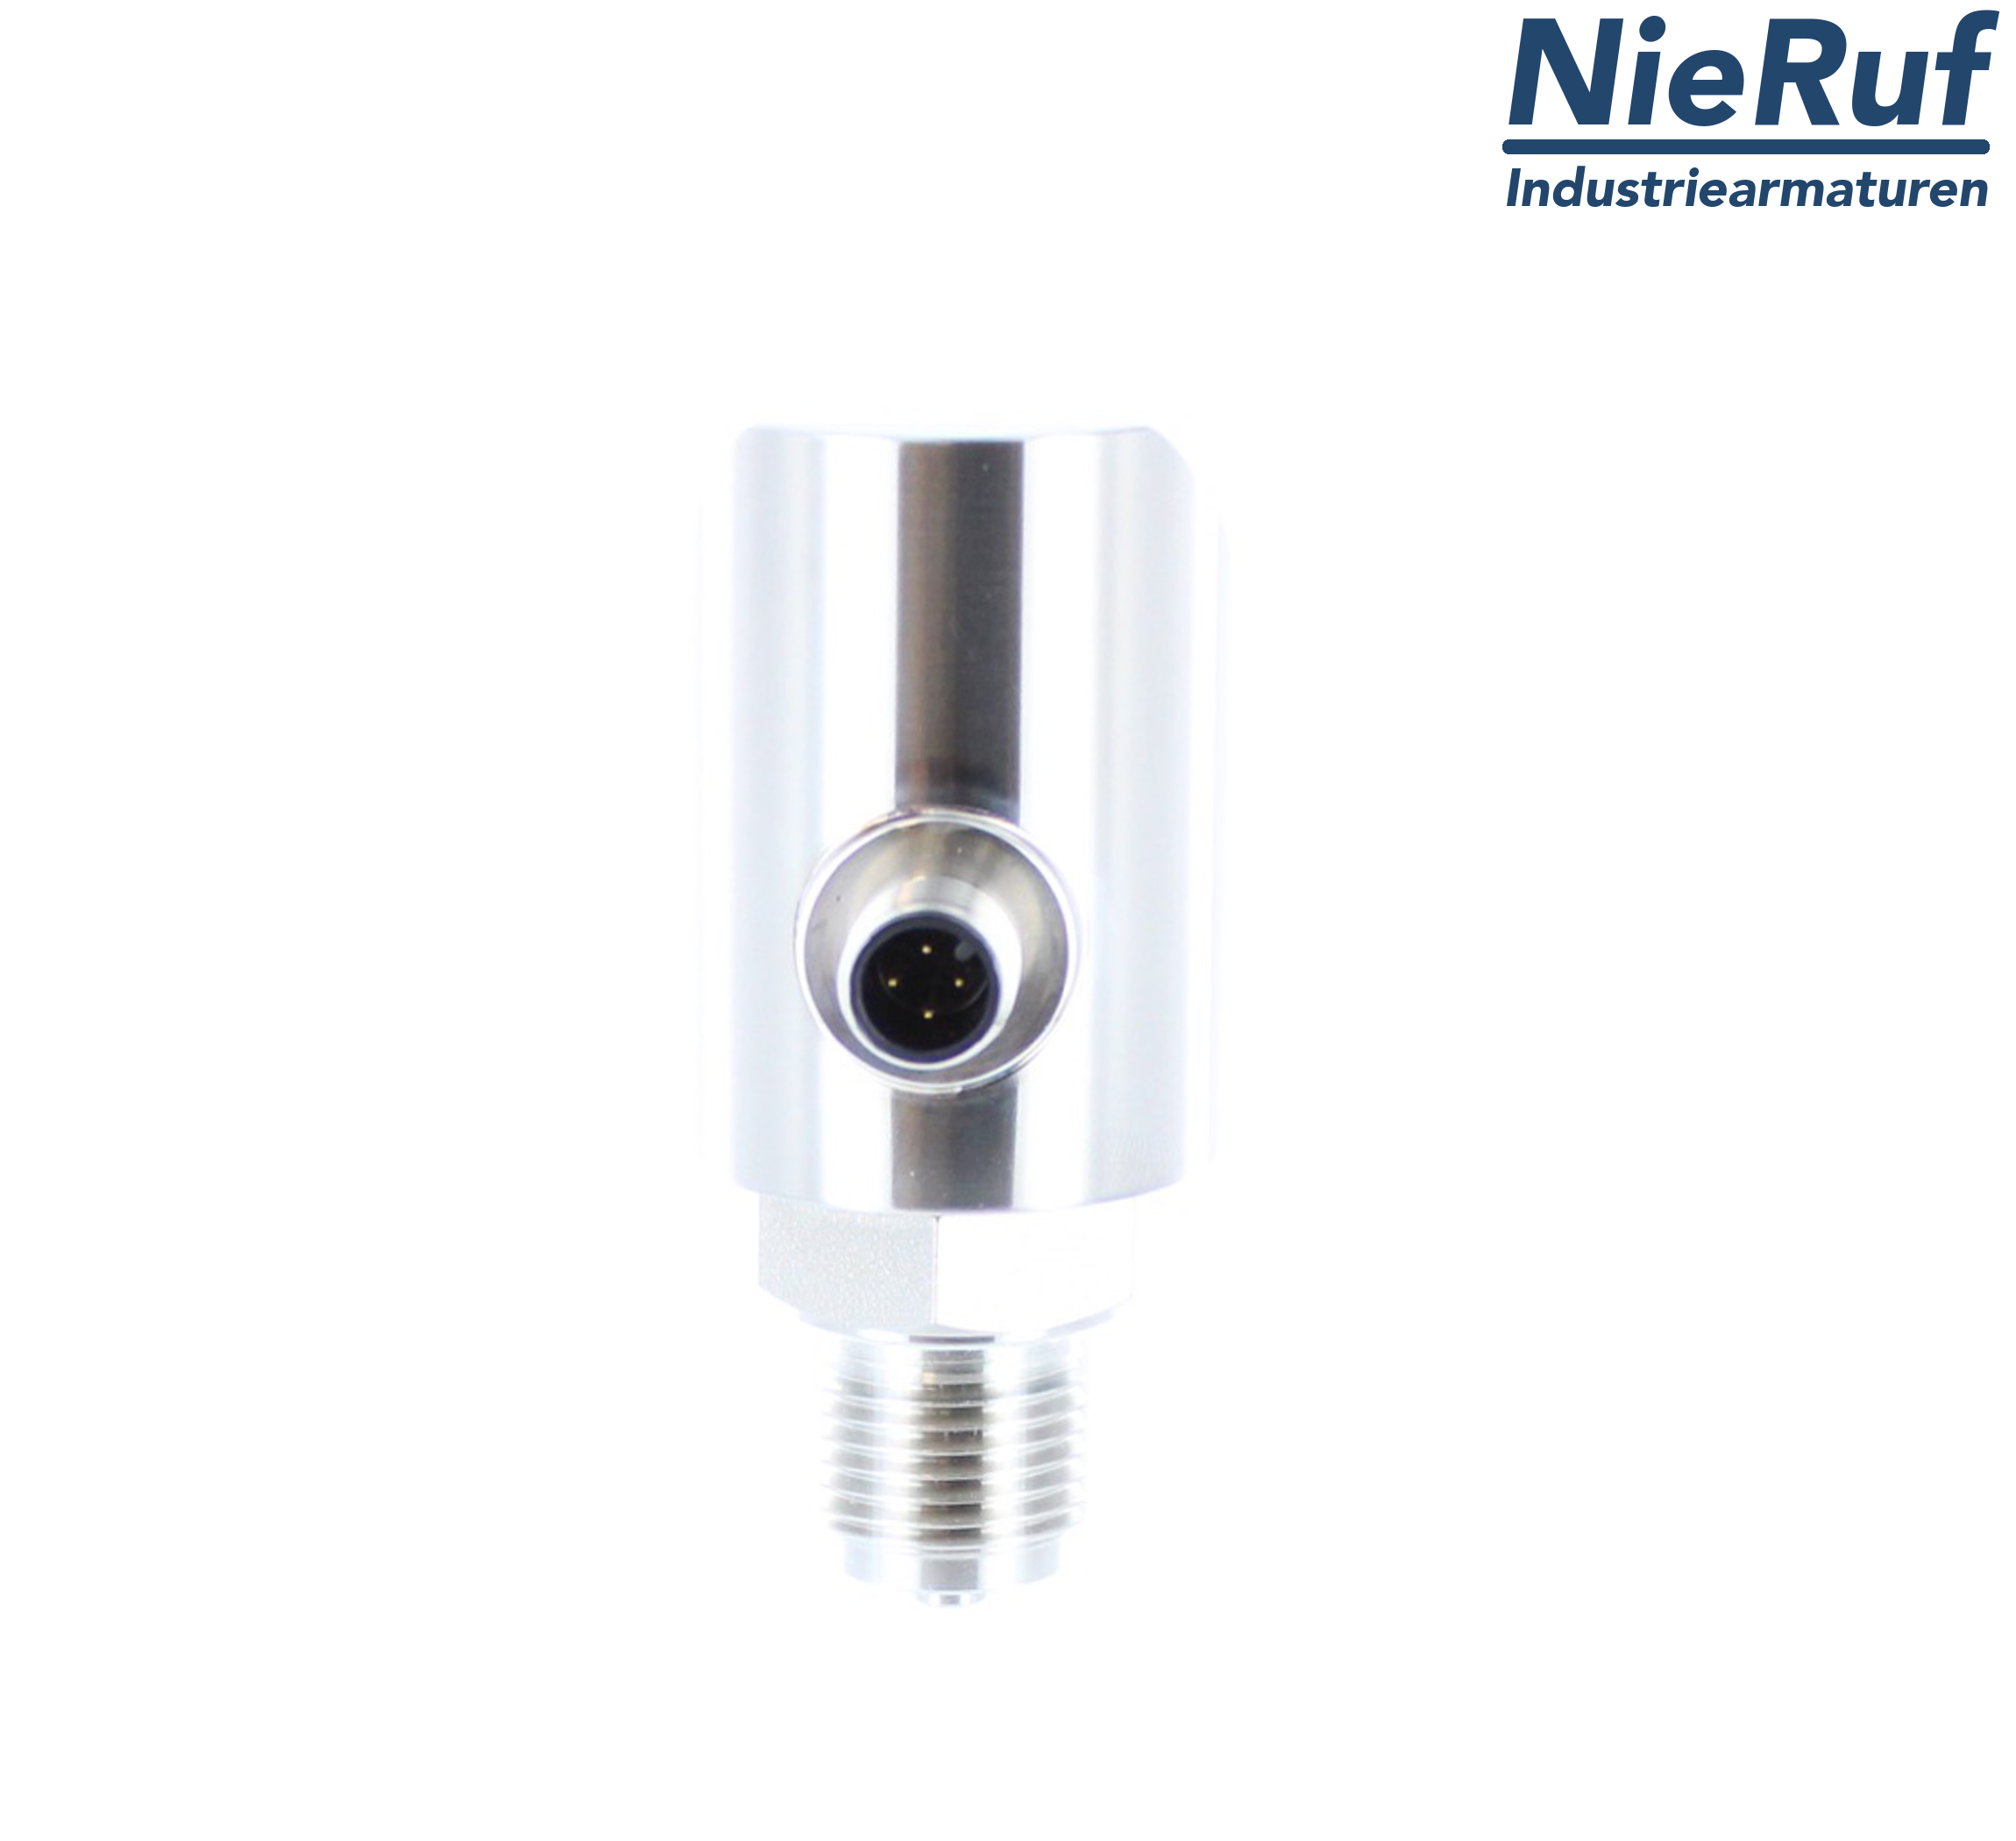 digital pressure sensor G 1/2" B IB 4-wire: 1xPNP, 1x4 - 20mA FPM 0,0 - 100,0 bar